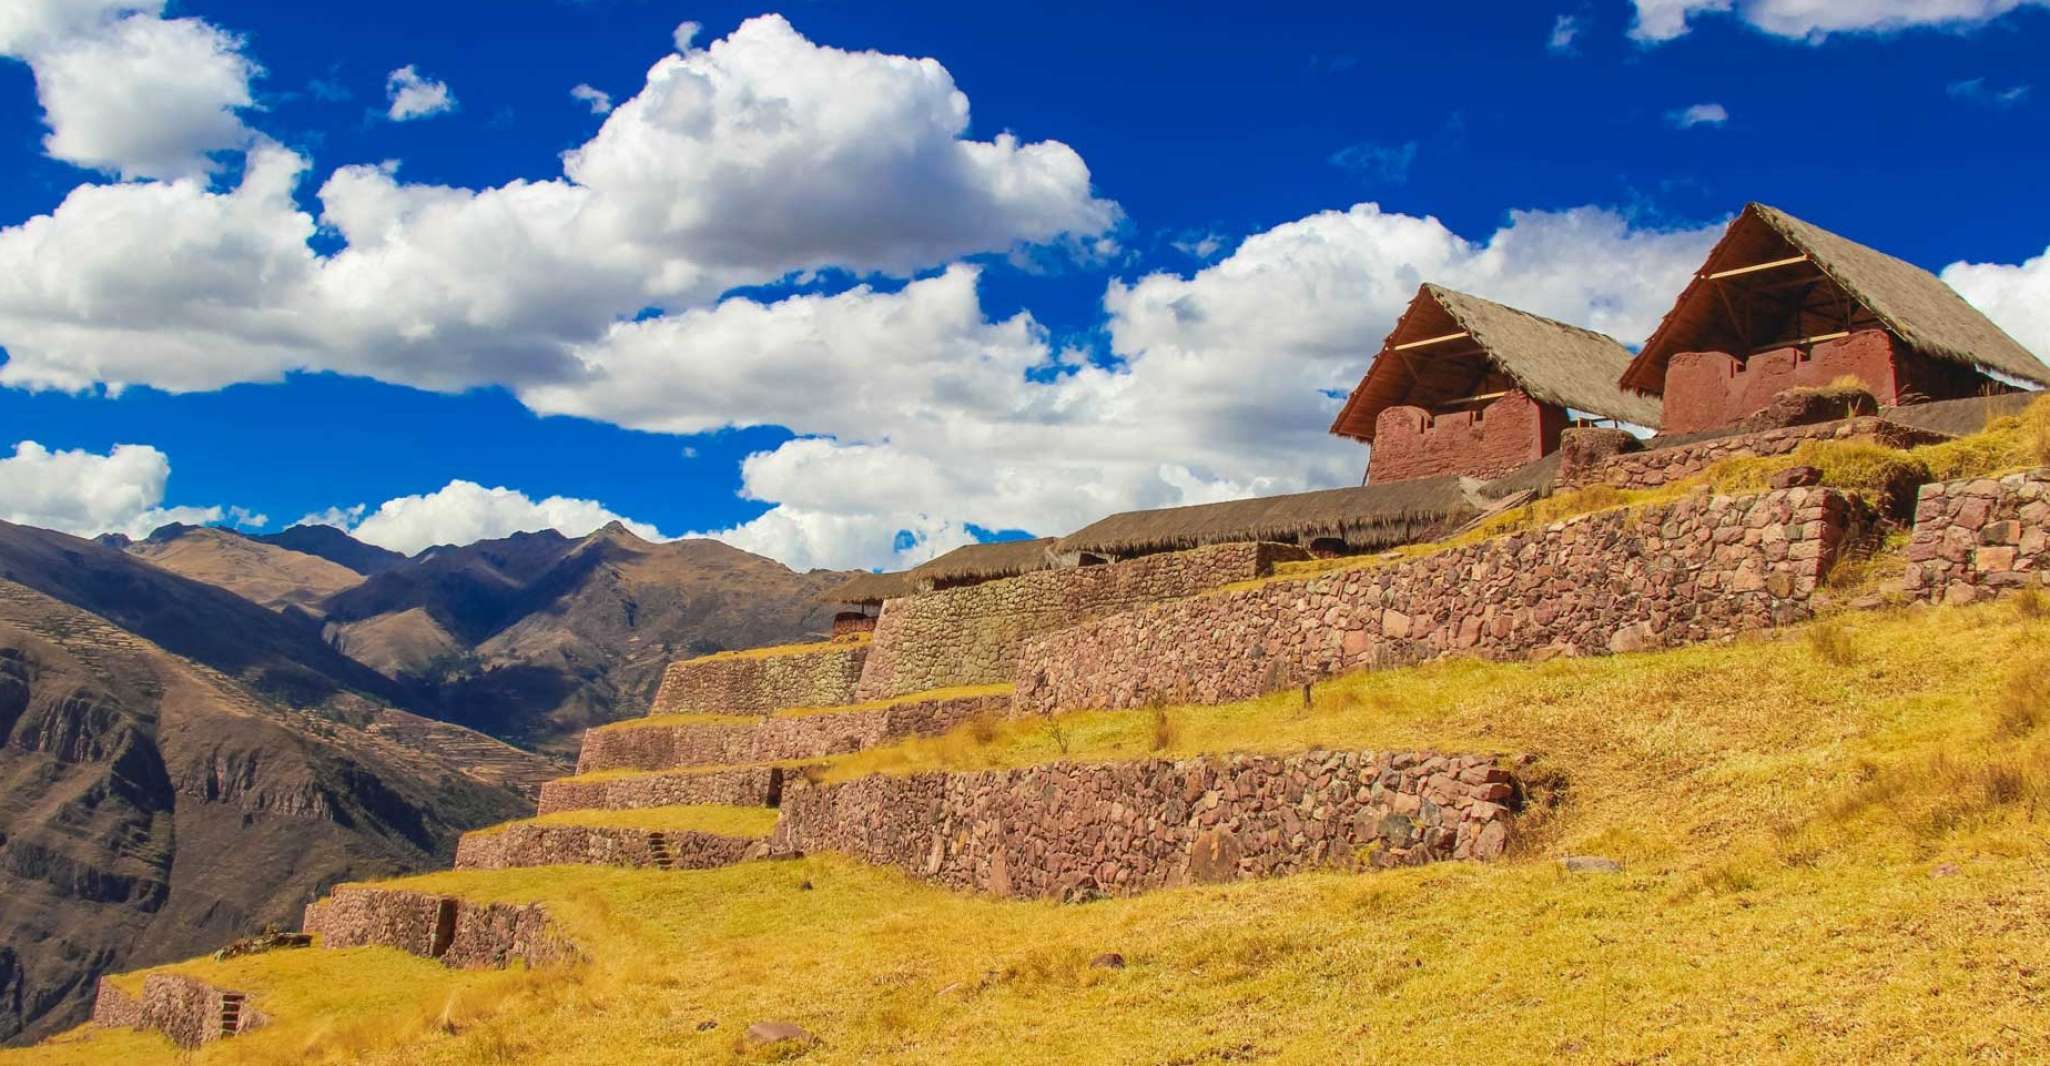 From Cusco, Huchuy Qosqo trek 3 Days 2 Nights |Private Tour| - Housity